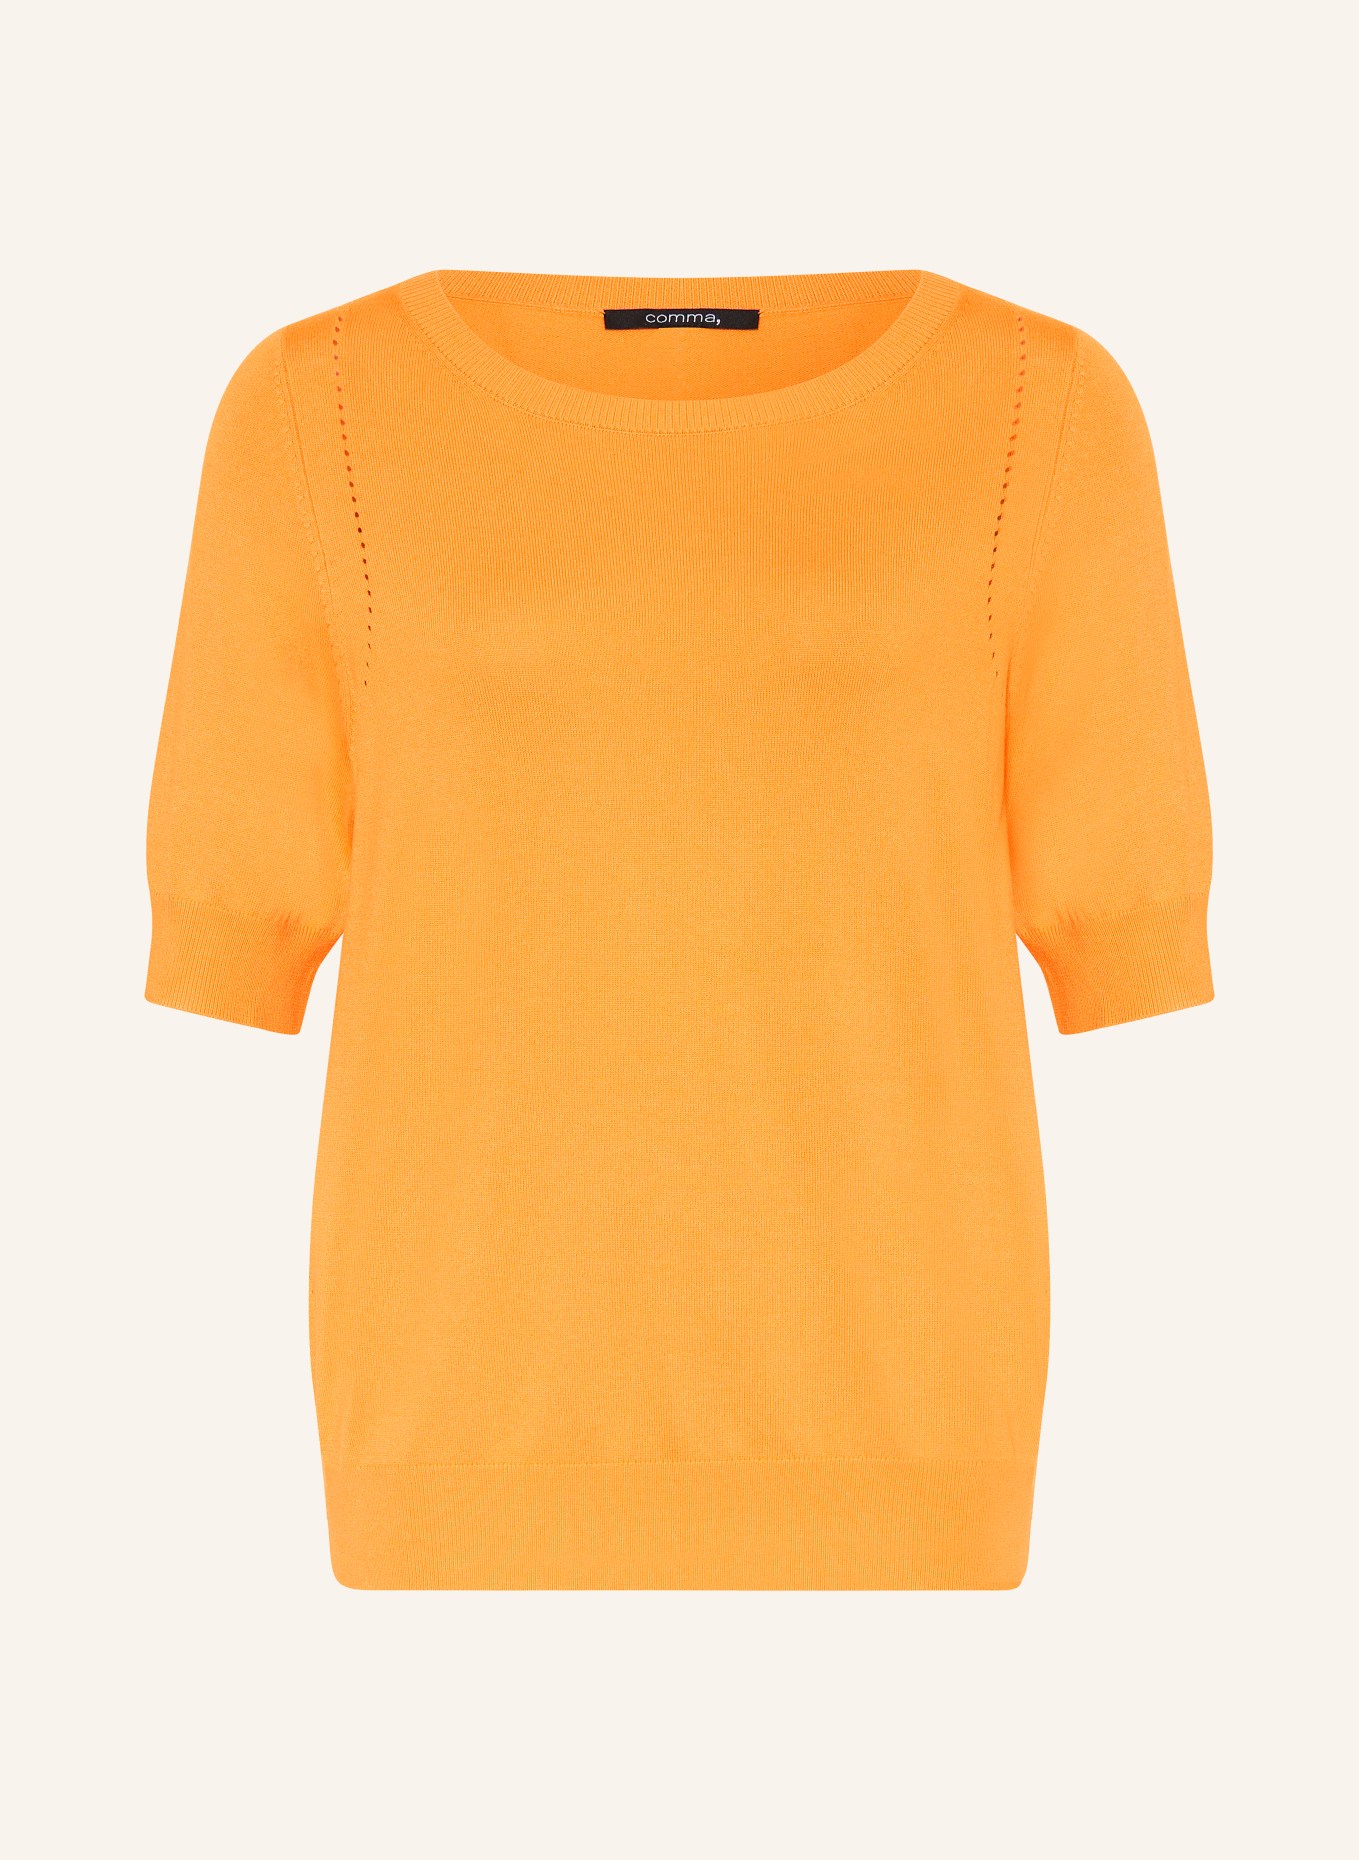 comma Knit shirt, Color: ORANGE (Image 1)